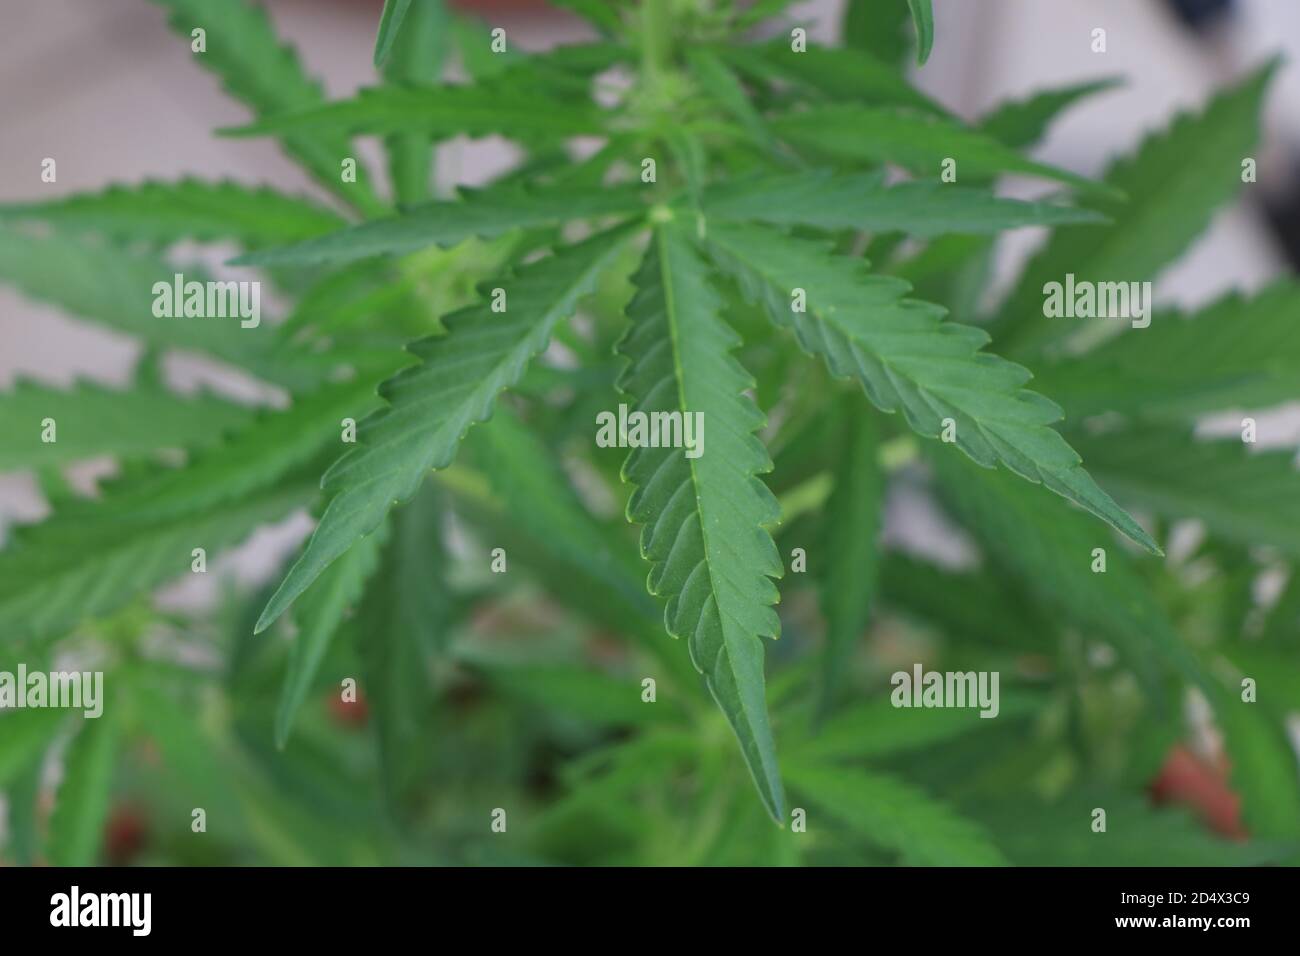 Un gros plan d'une plante verte de cannabis marijuana. Photo de haute qualité Banque D'Images